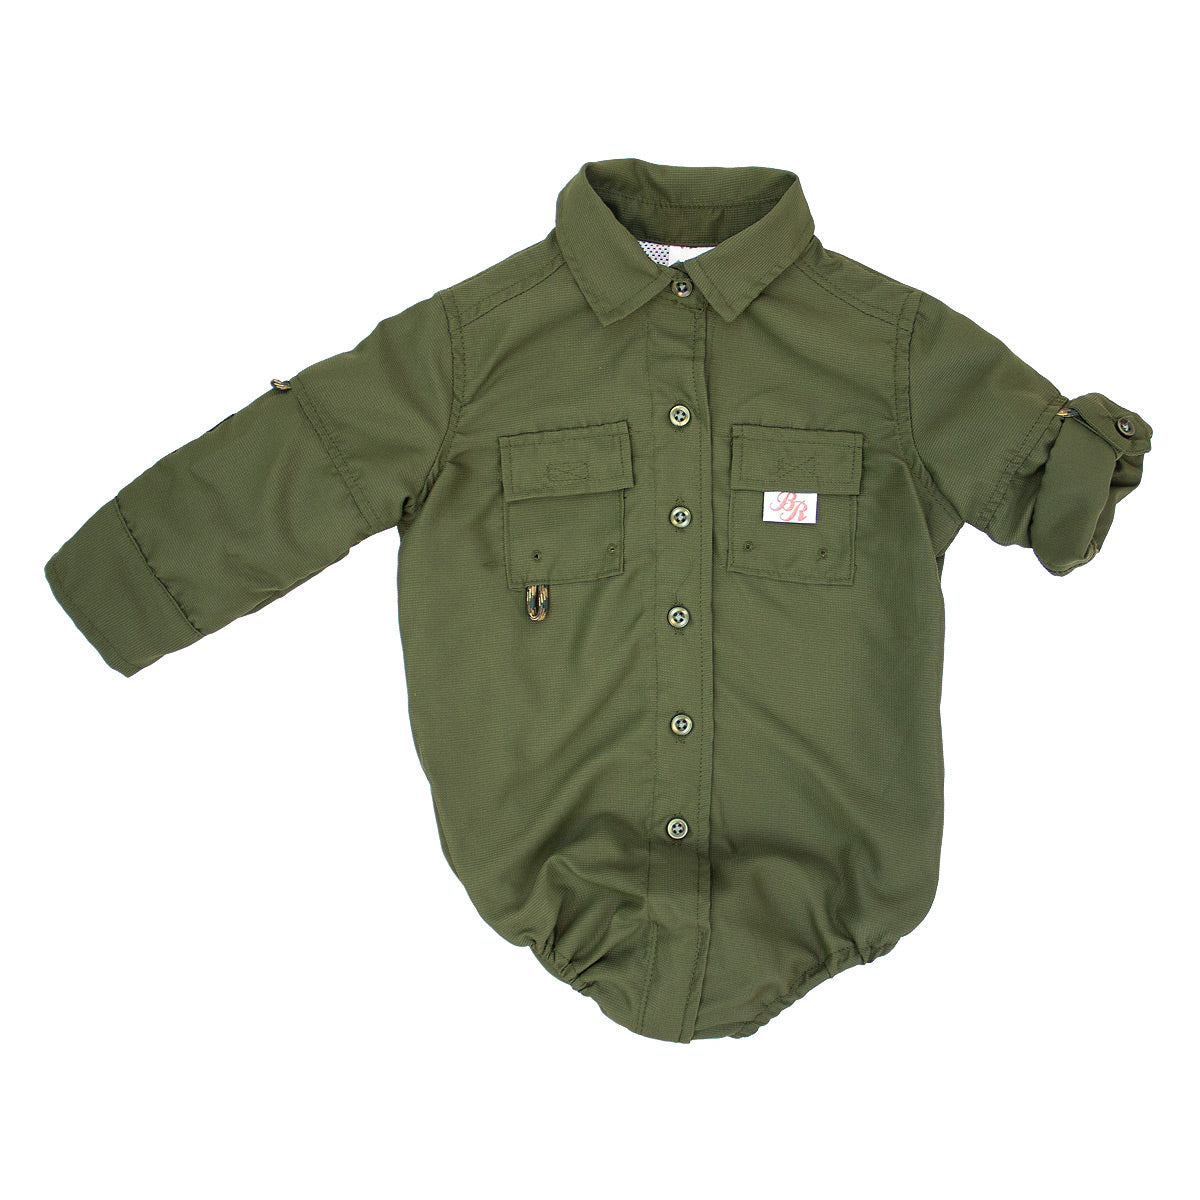 Baby/Infant Fishing Onesies  Baby Fishing Shirts, Bodysuit Snapsuit –  BullRed Clothing Inc.